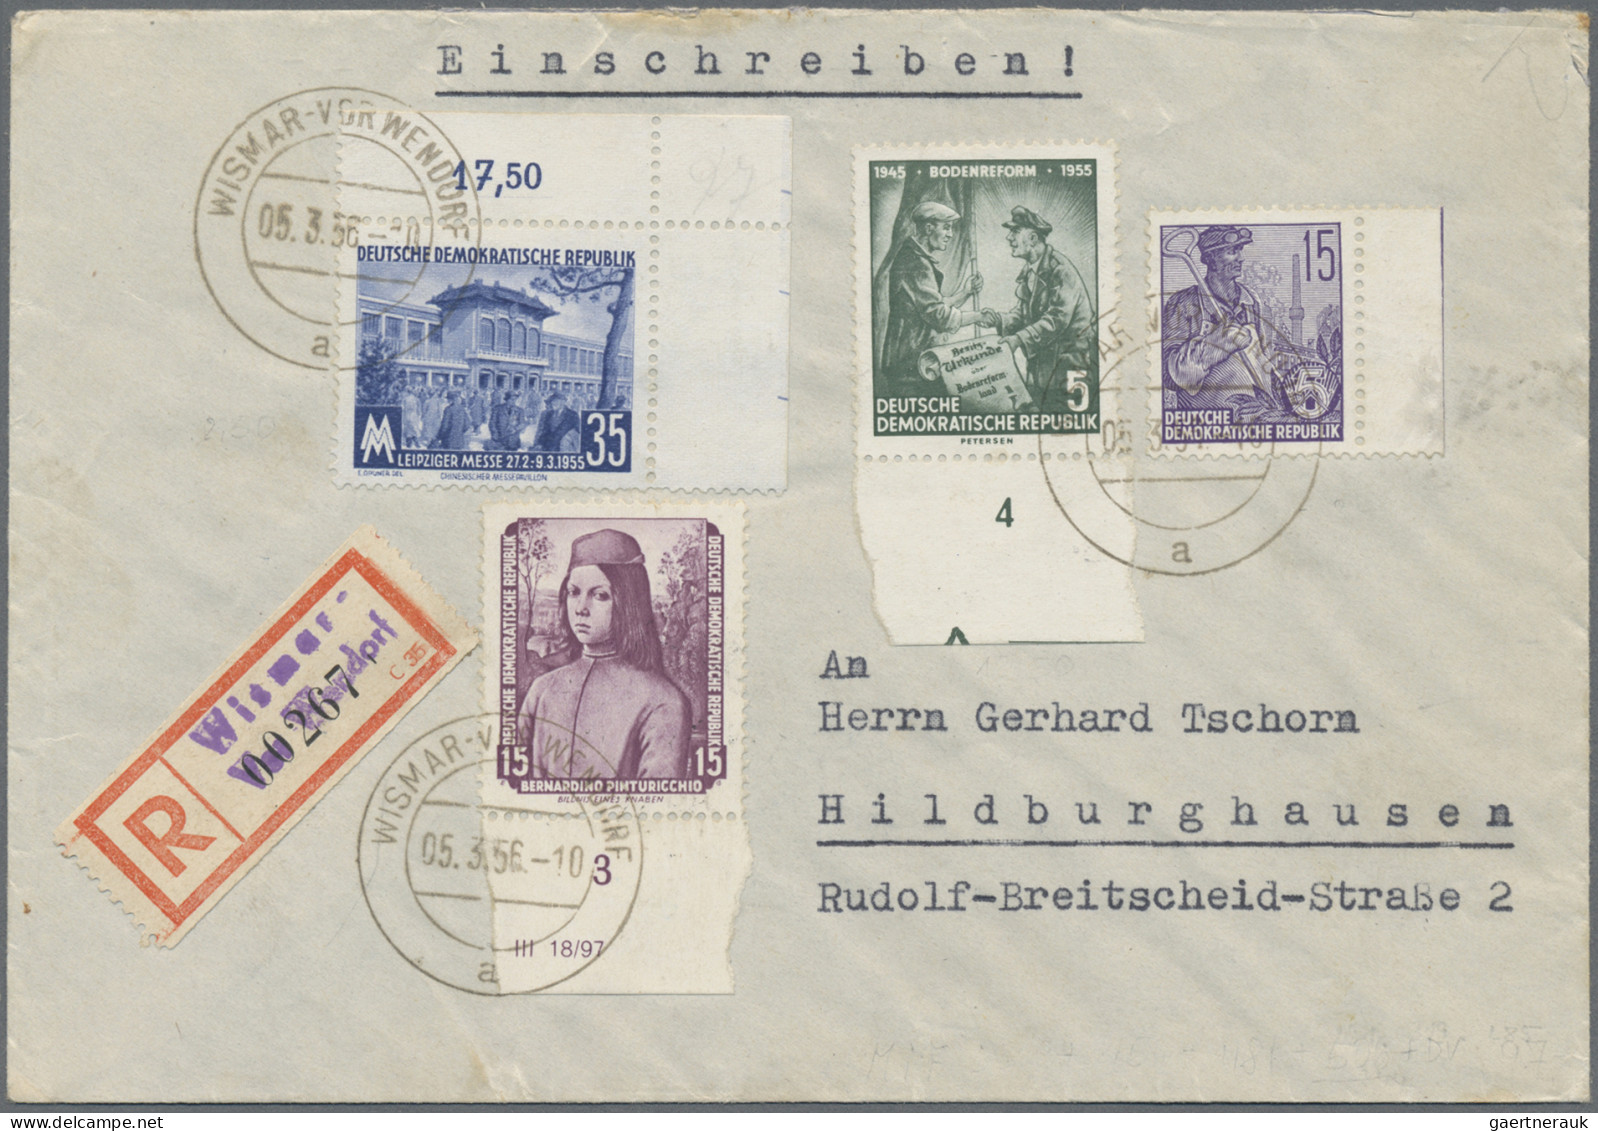 DDR: 1950/1962, Partie von 25 Briefen und Karten mit interessanten Frankaturen d